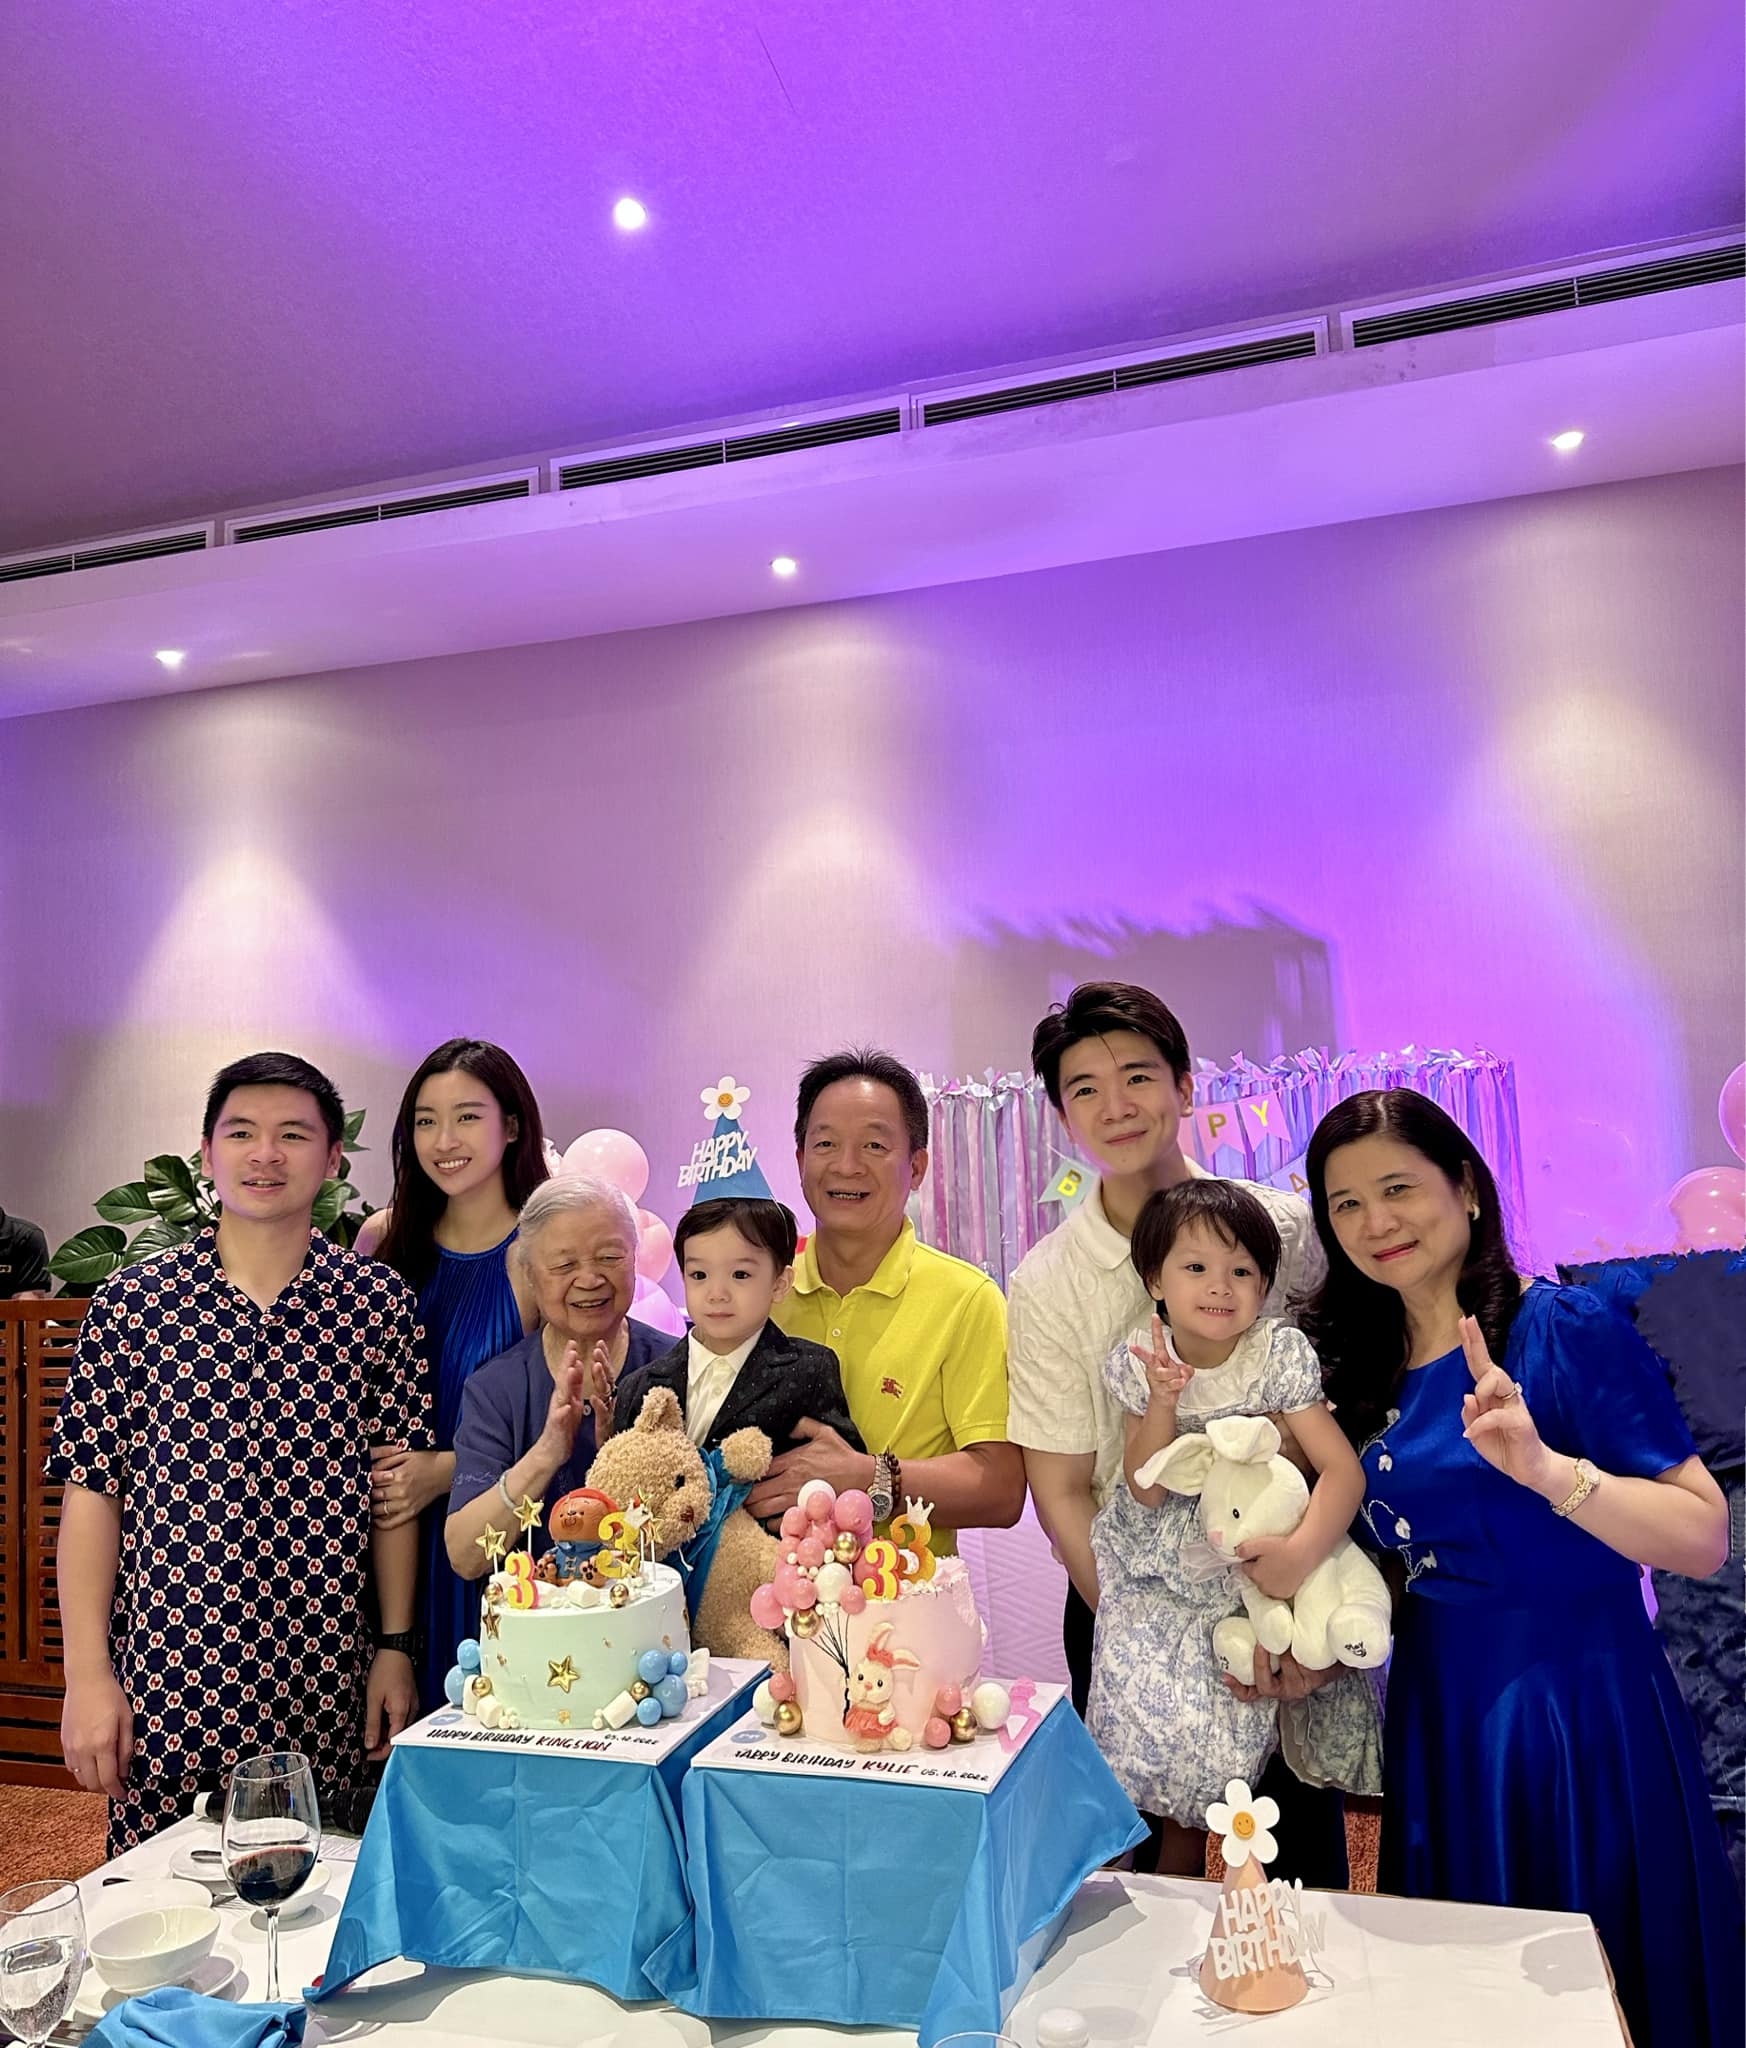 Hoa hậu Đỗ Mỹ Linh cùng gia đình chồng tổ chức sinh nhật cho cặp song sinh.